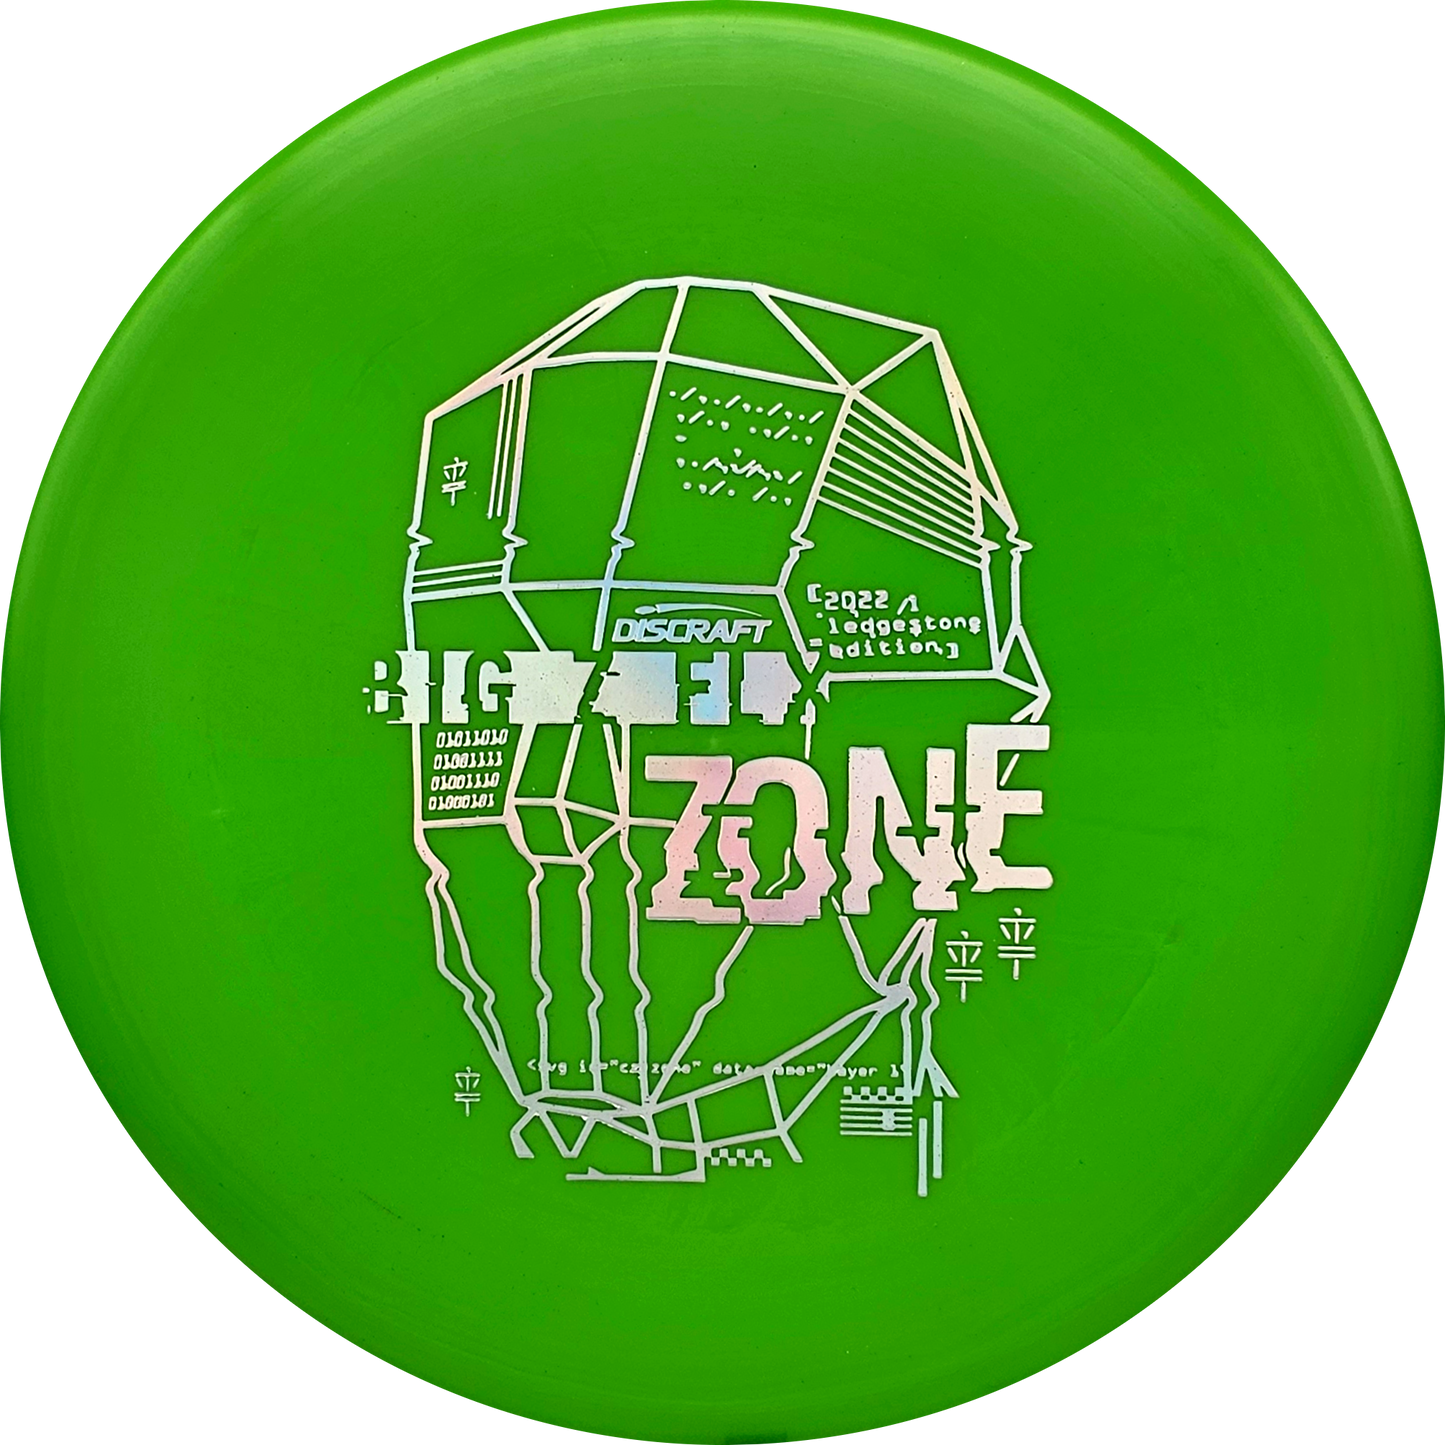 Discraft Big Z FLX Zone - Ledgestone 2022